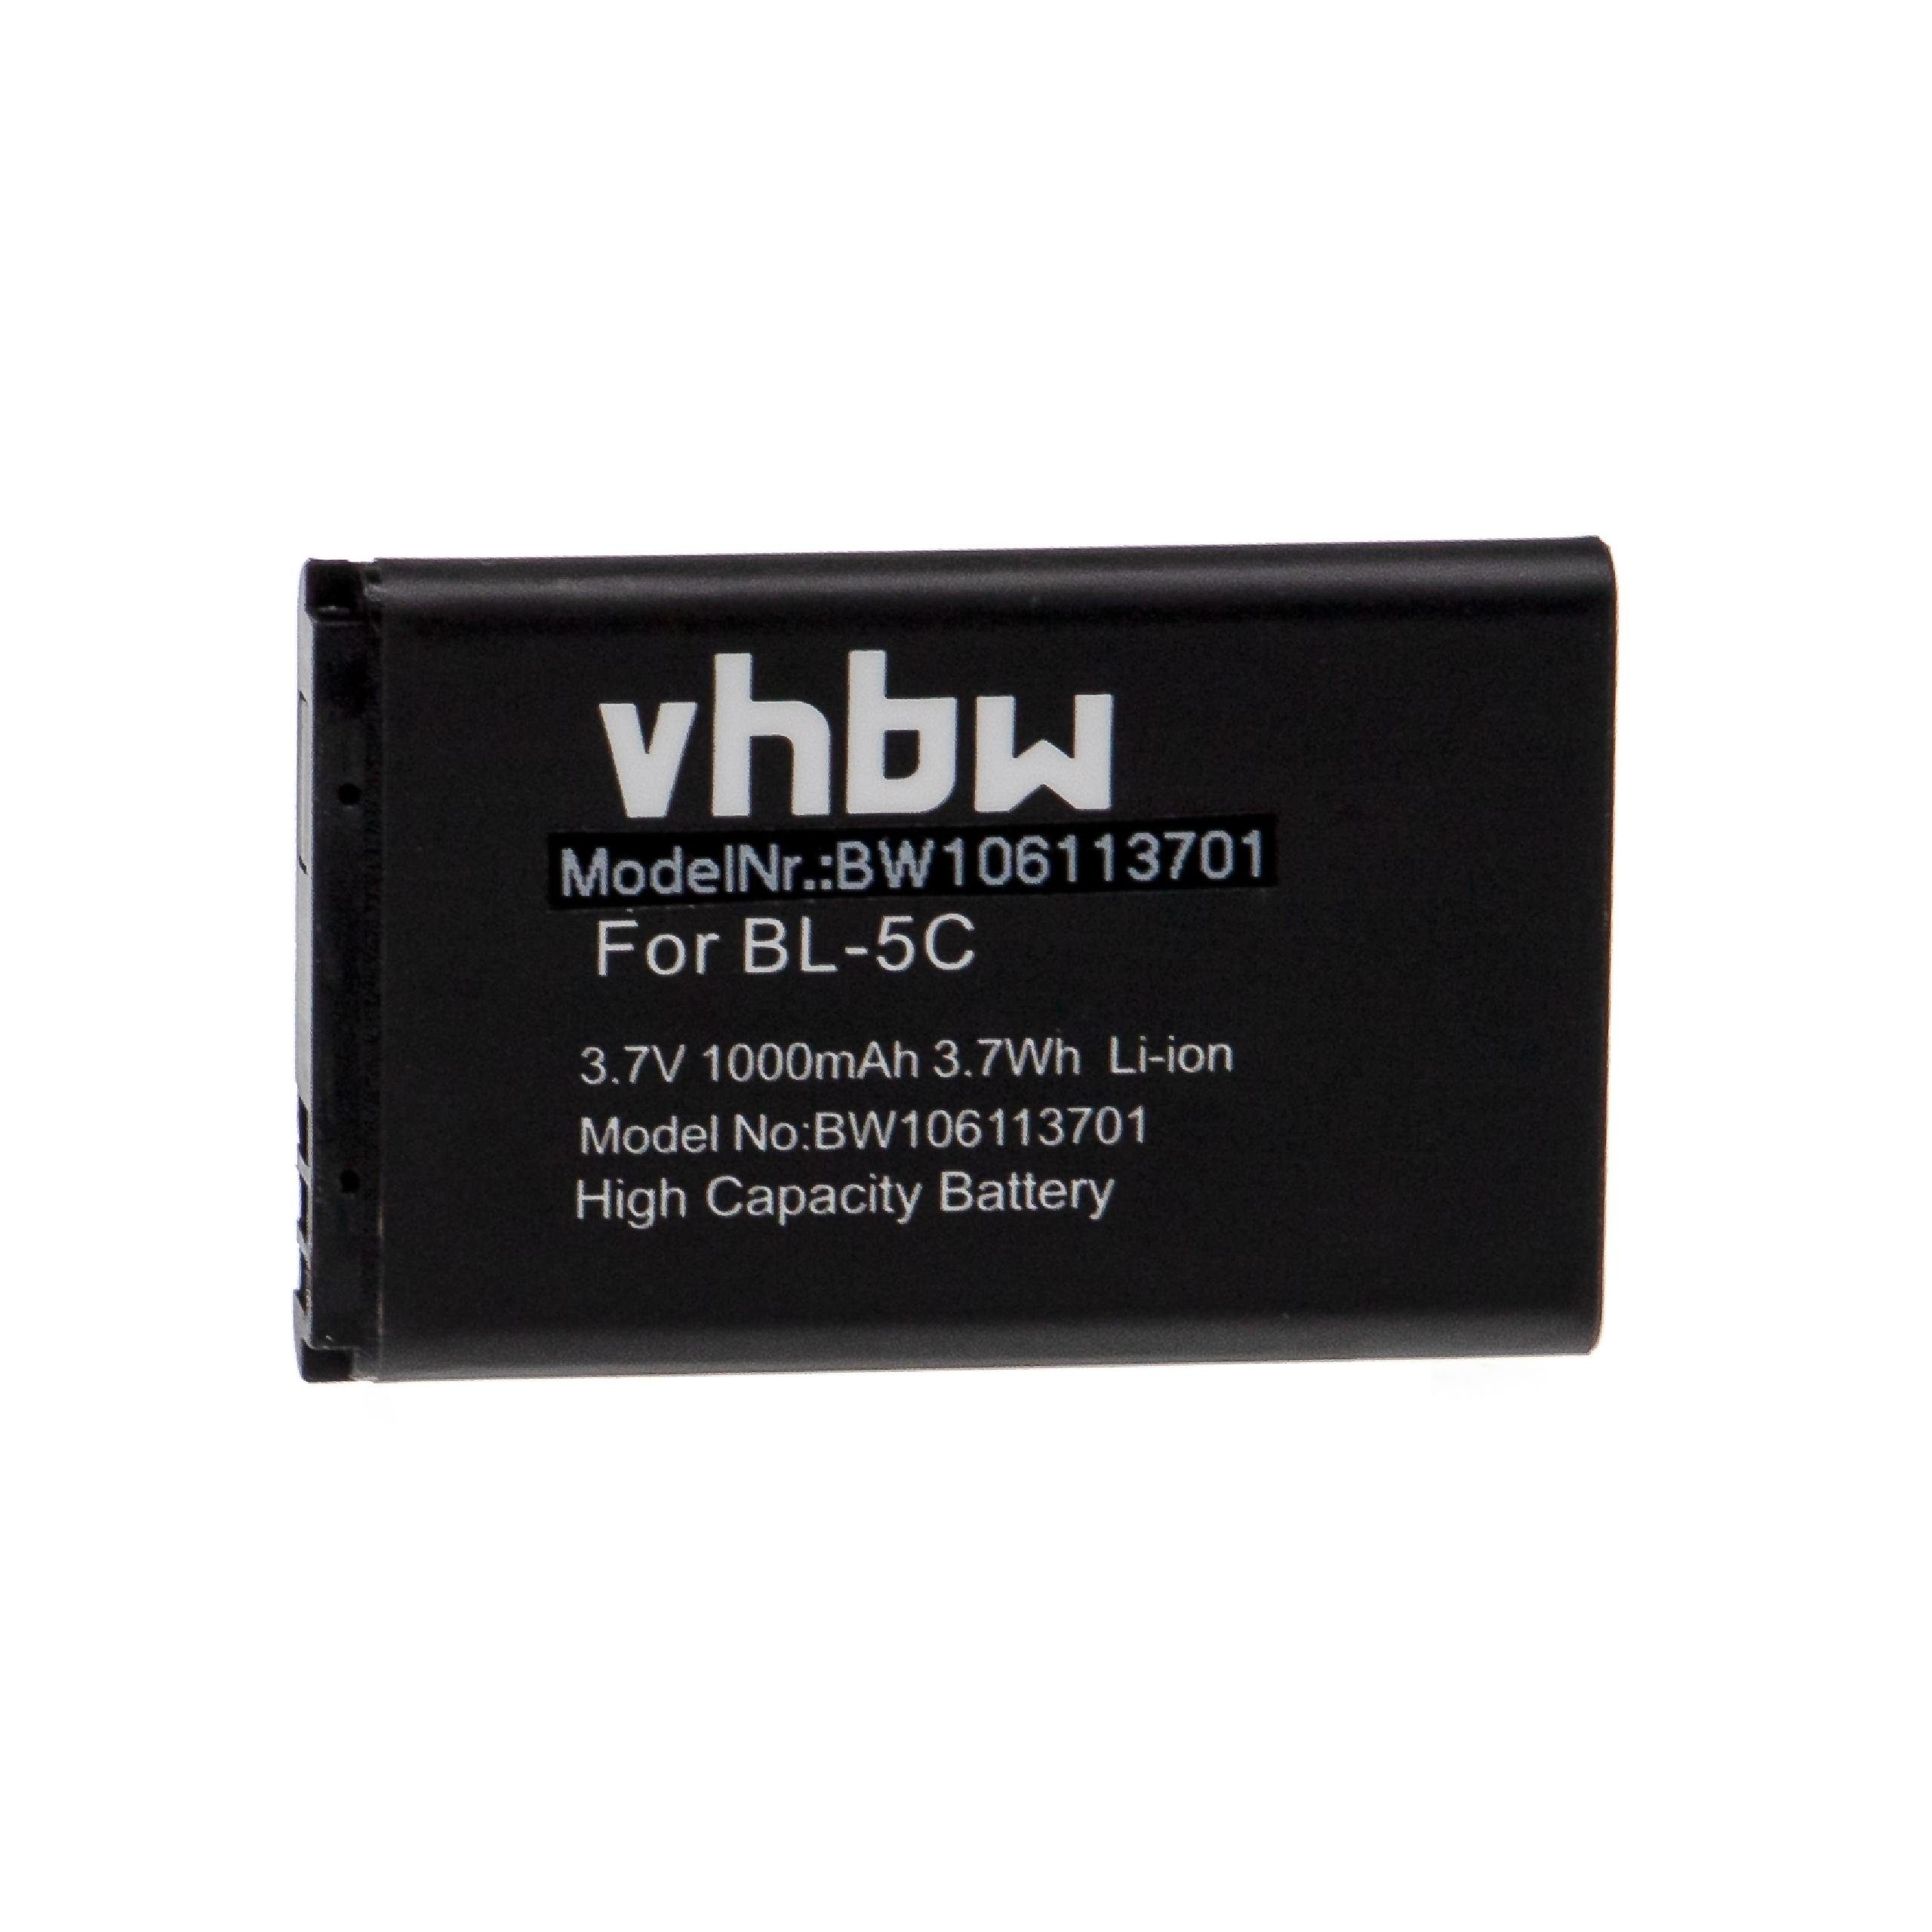 vhbw kompatibel mit Swisstone MP22, MP03, SC 330, MP33, SX 567, SC 230 Smartphone-Akku Li-Ion 1000 mAh (3,7 V)